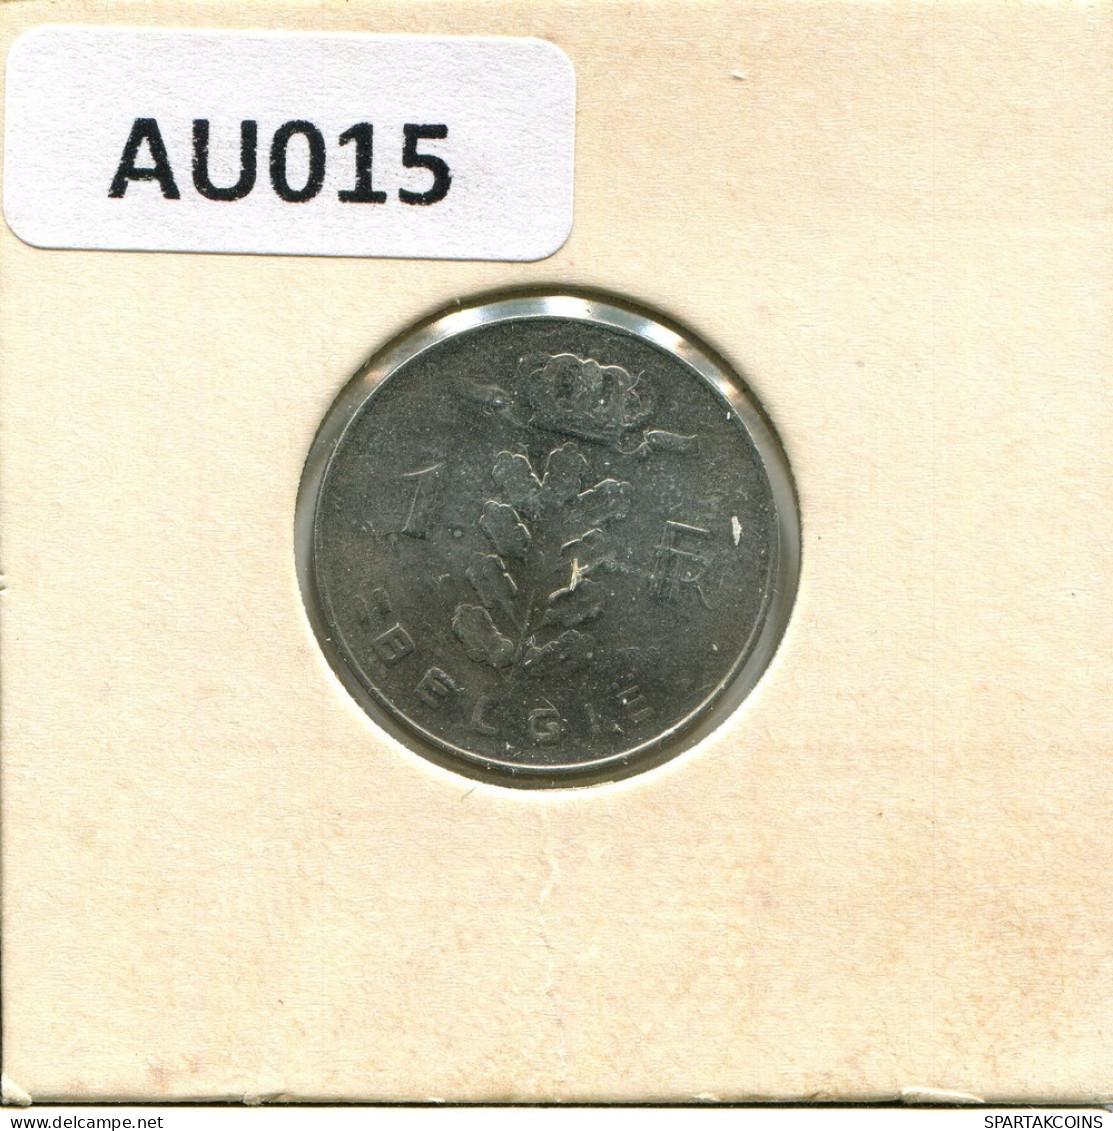 1 FRANC 1977 DUTCH Text BELGIUM Coin #AU015.U.A - 1 Franc